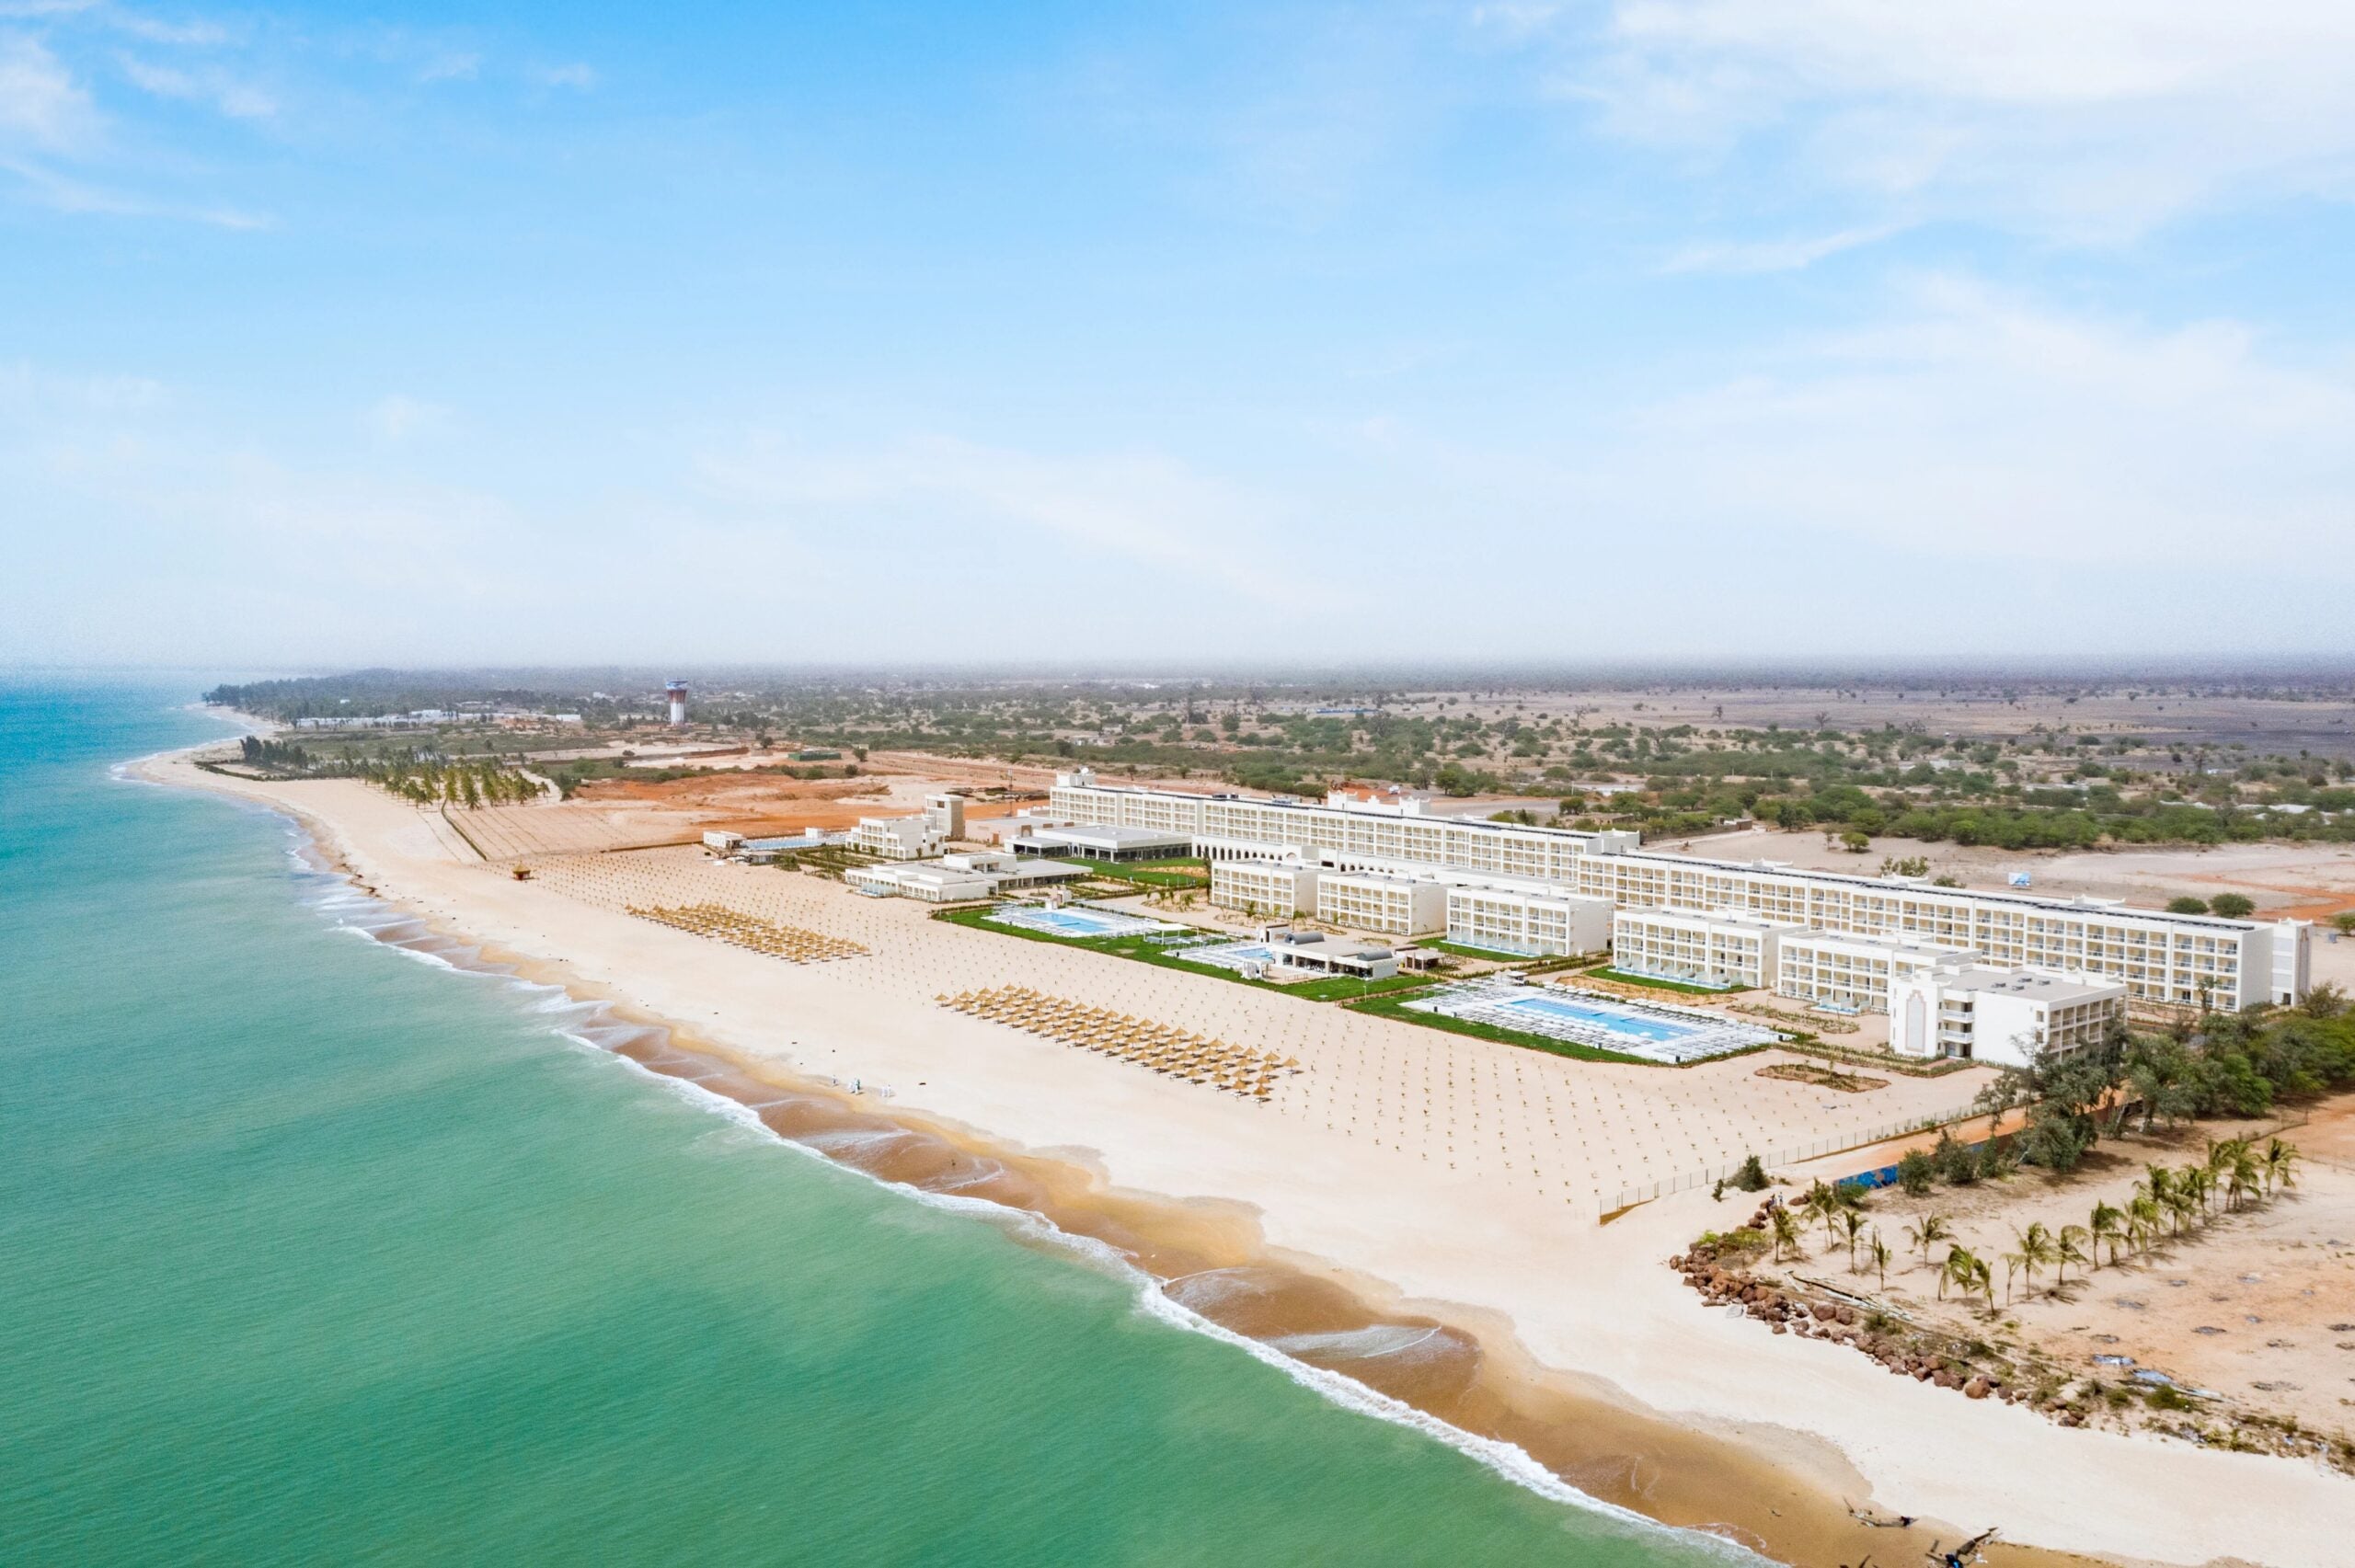 RIU opens new five-star hotel in Senegal, West Africa